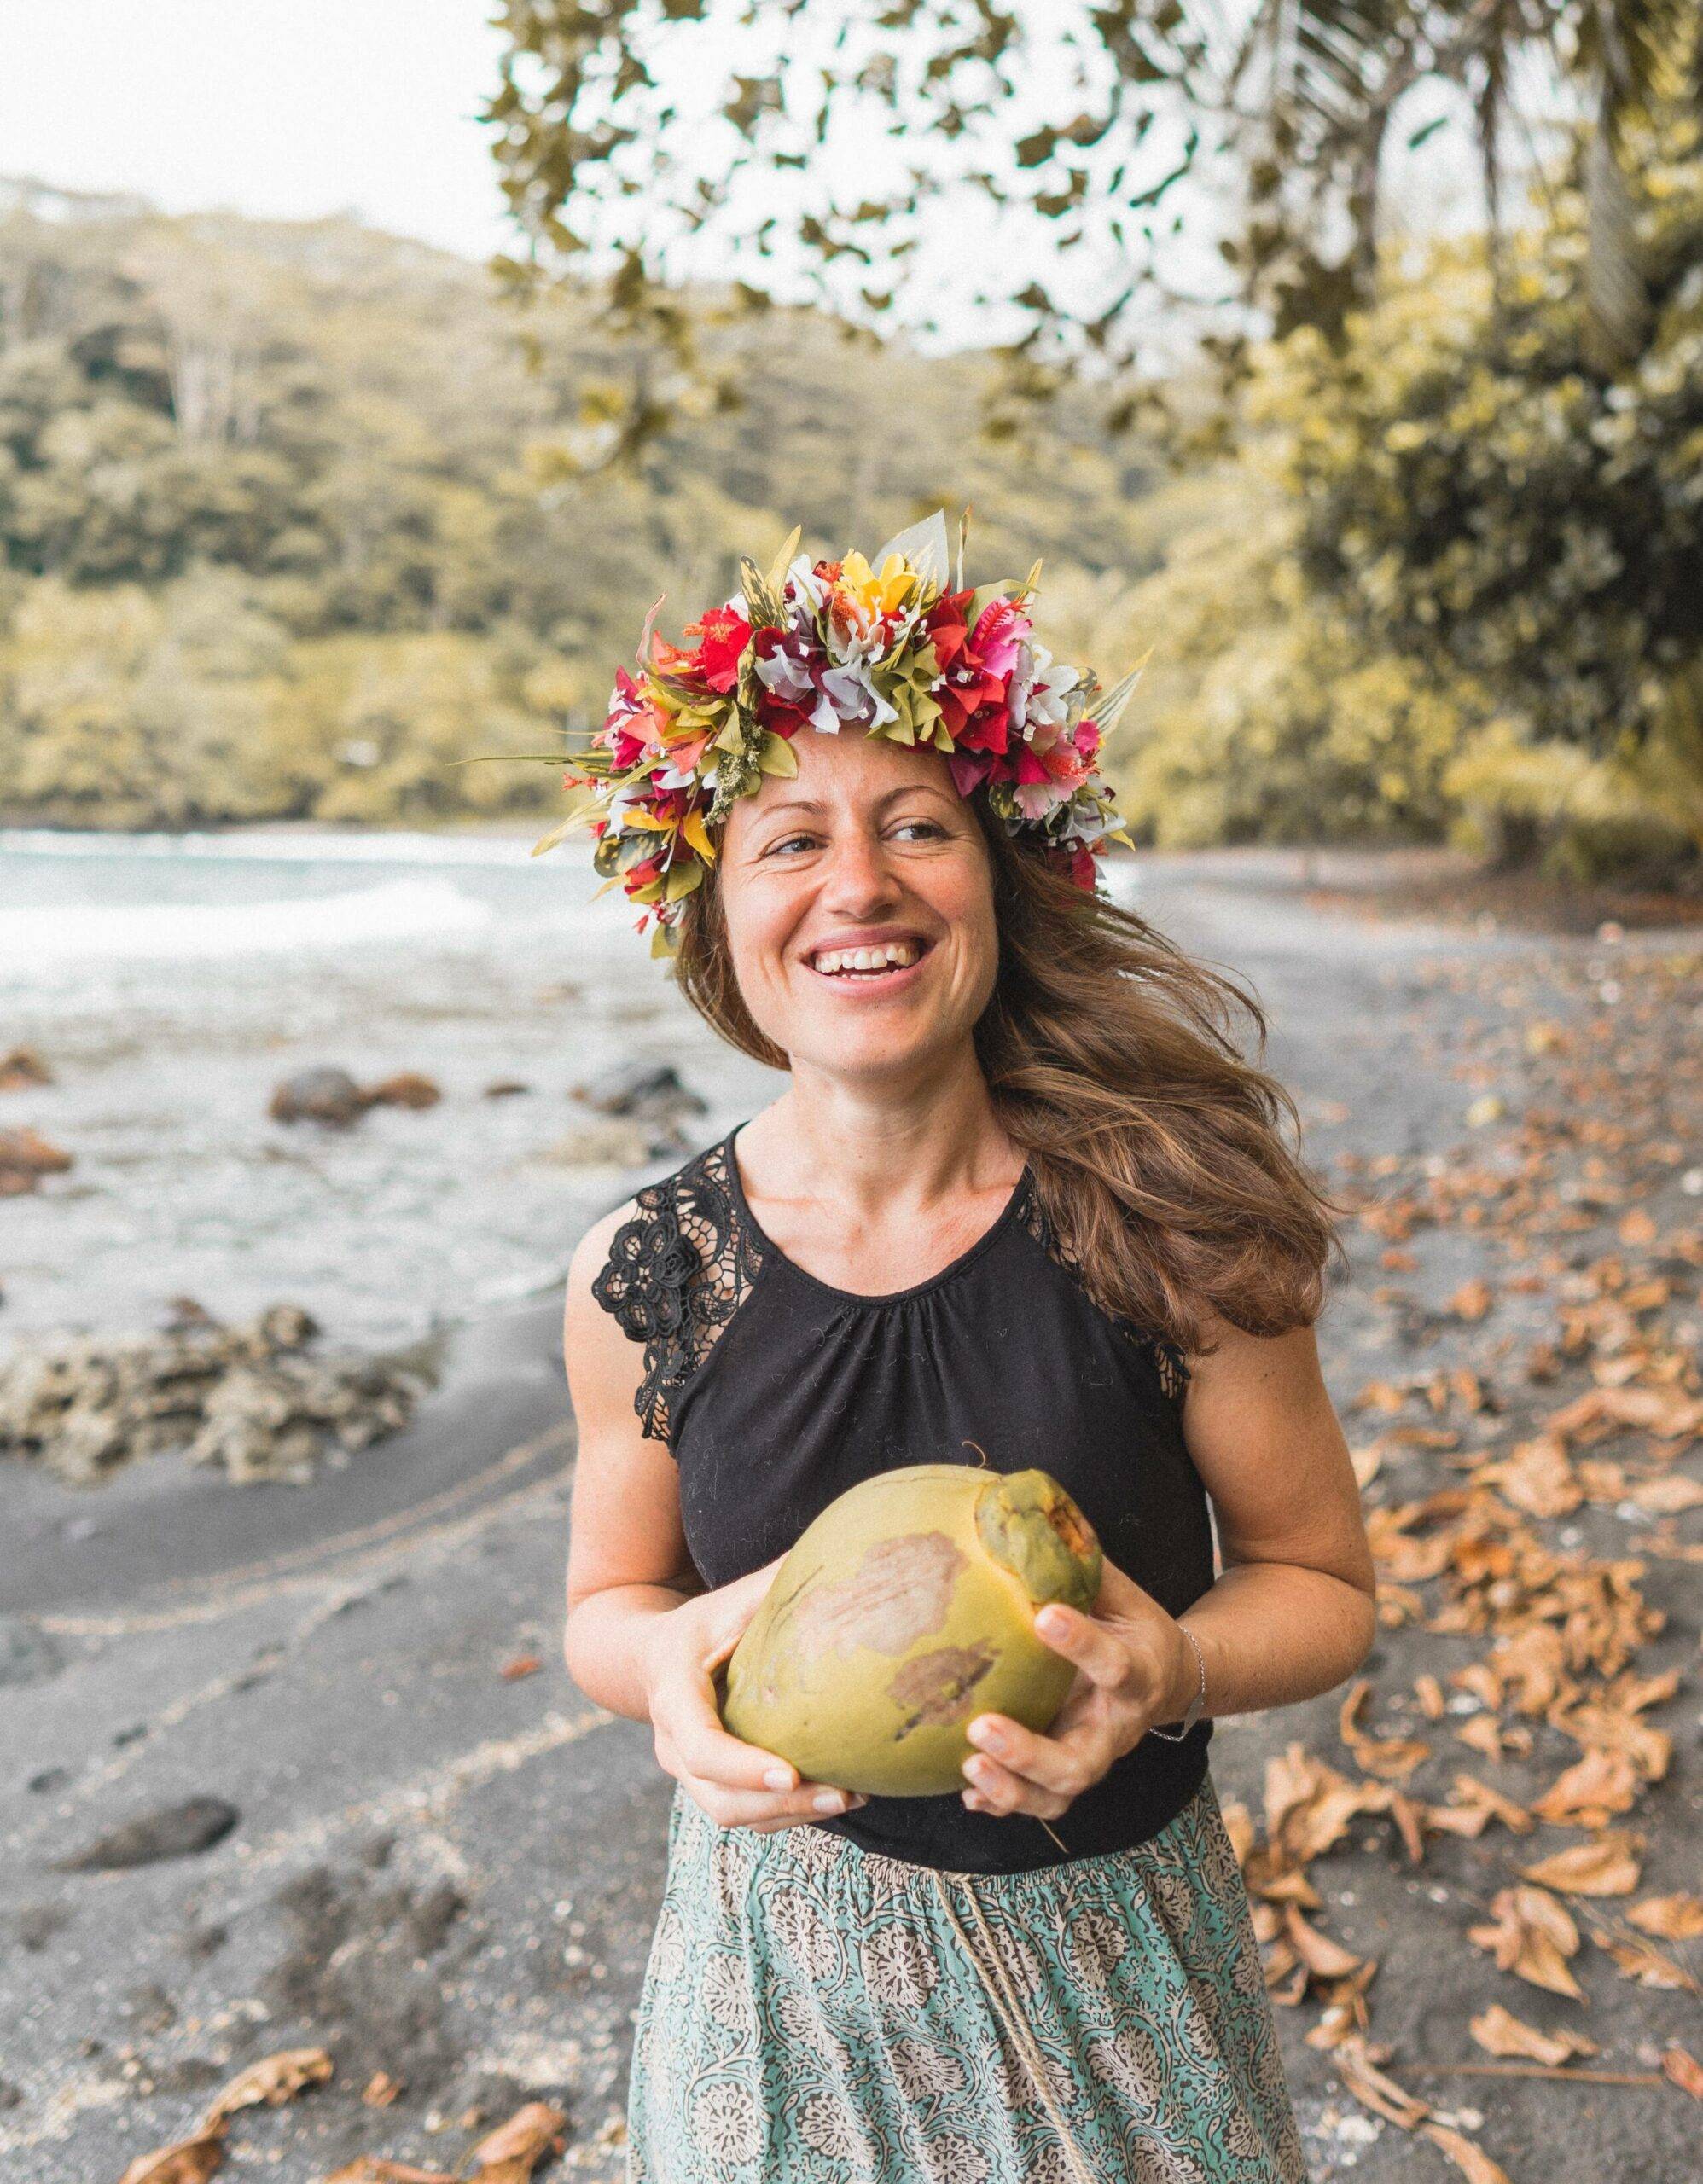 Reisebloggerin Melanie Schillinger vom Blog Good morning world mit einer Kokosnuss in der Hand und Blumenkranz auf dem Kopf.